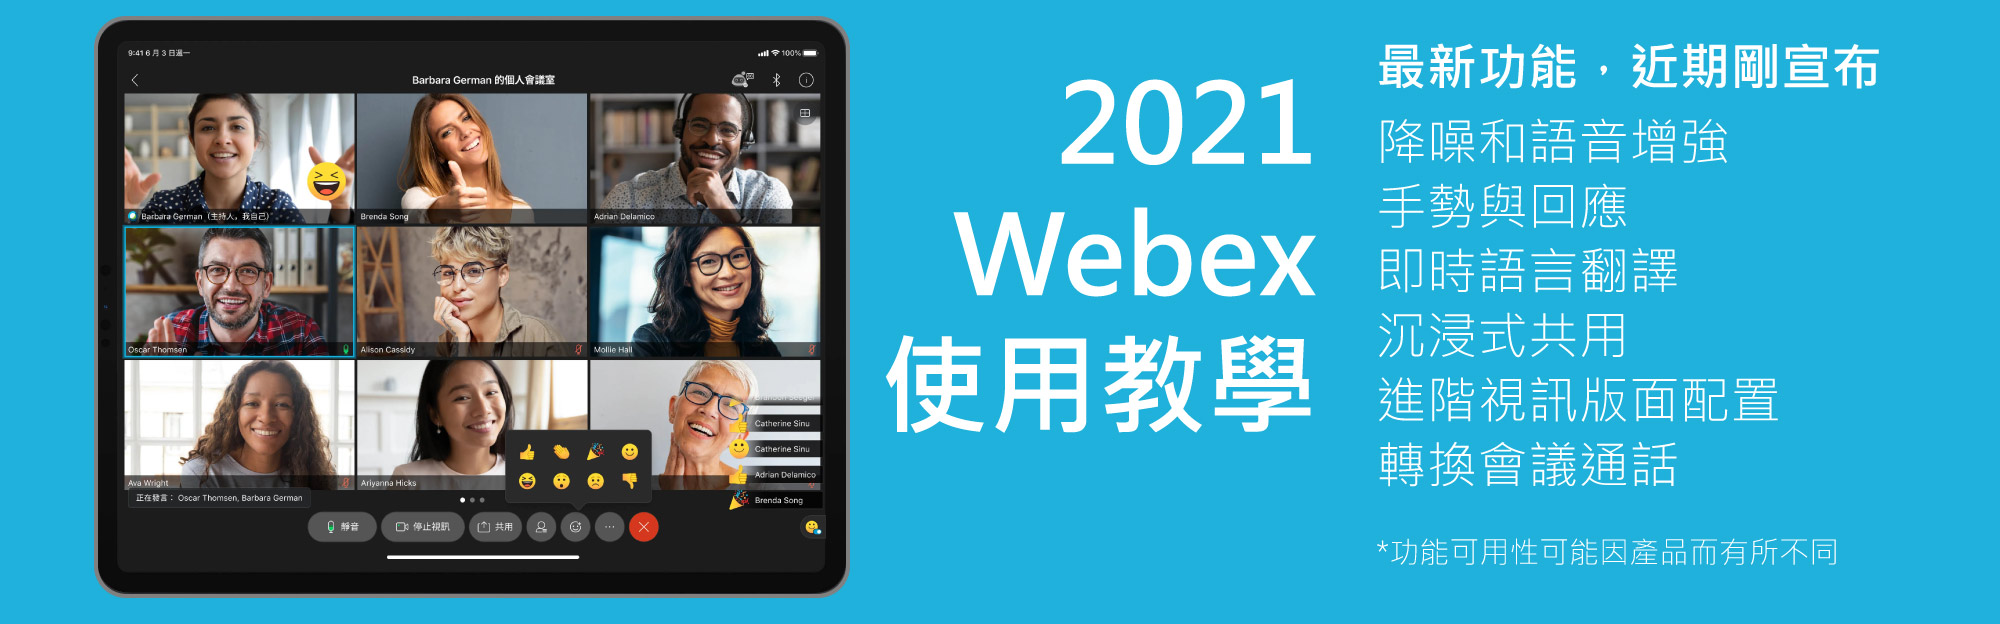 Cisco Webex 操作手冊